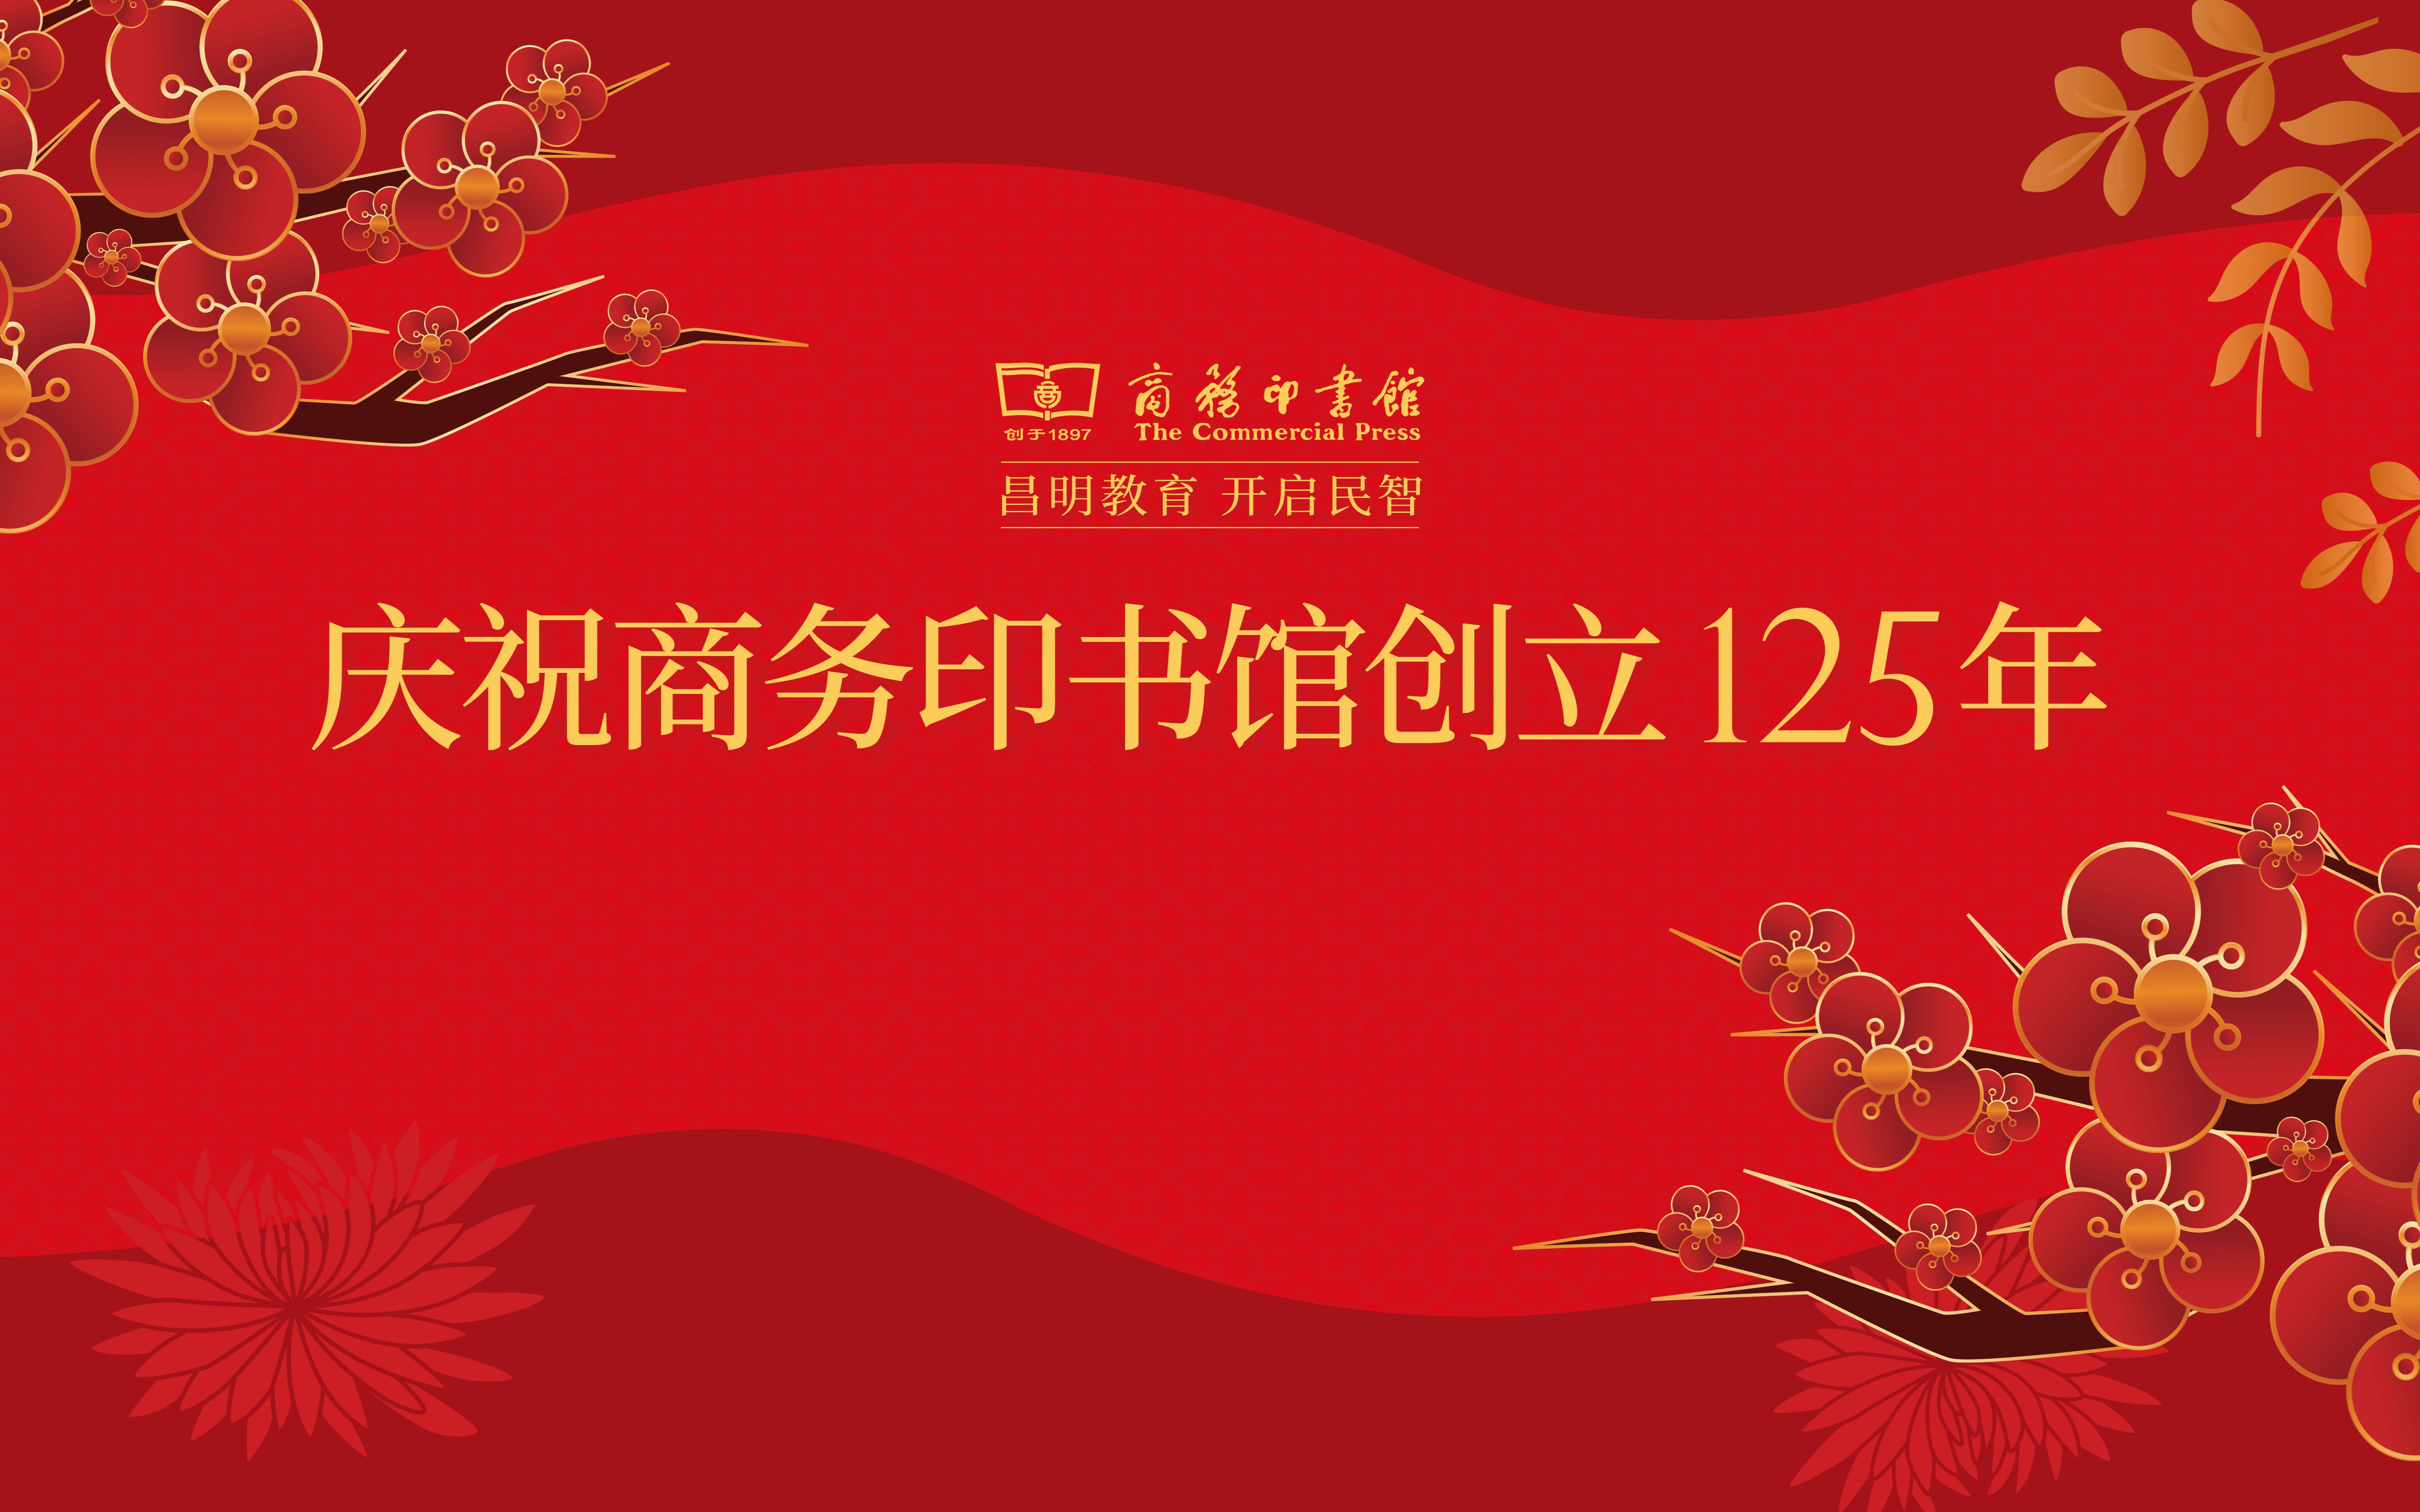 庆祝商务印书馆创立125周年·朱永新